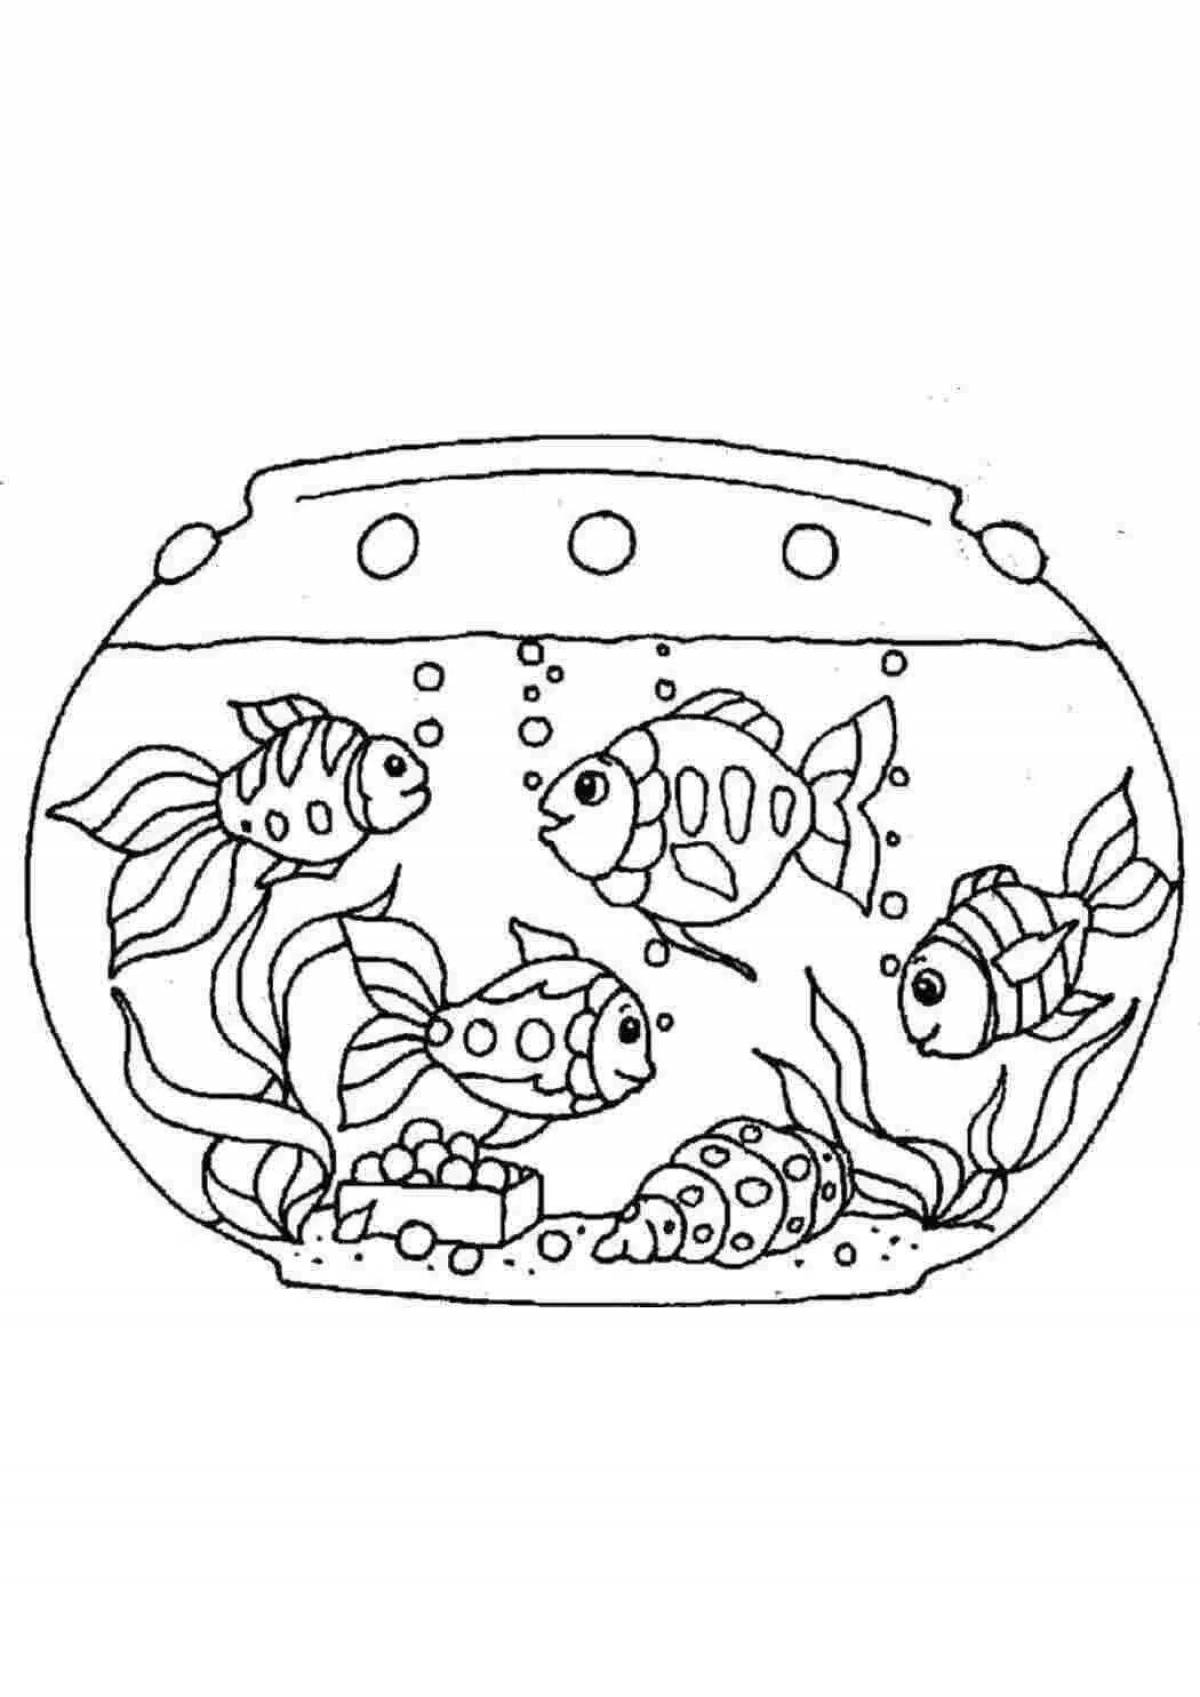 Fish in aquarium #1